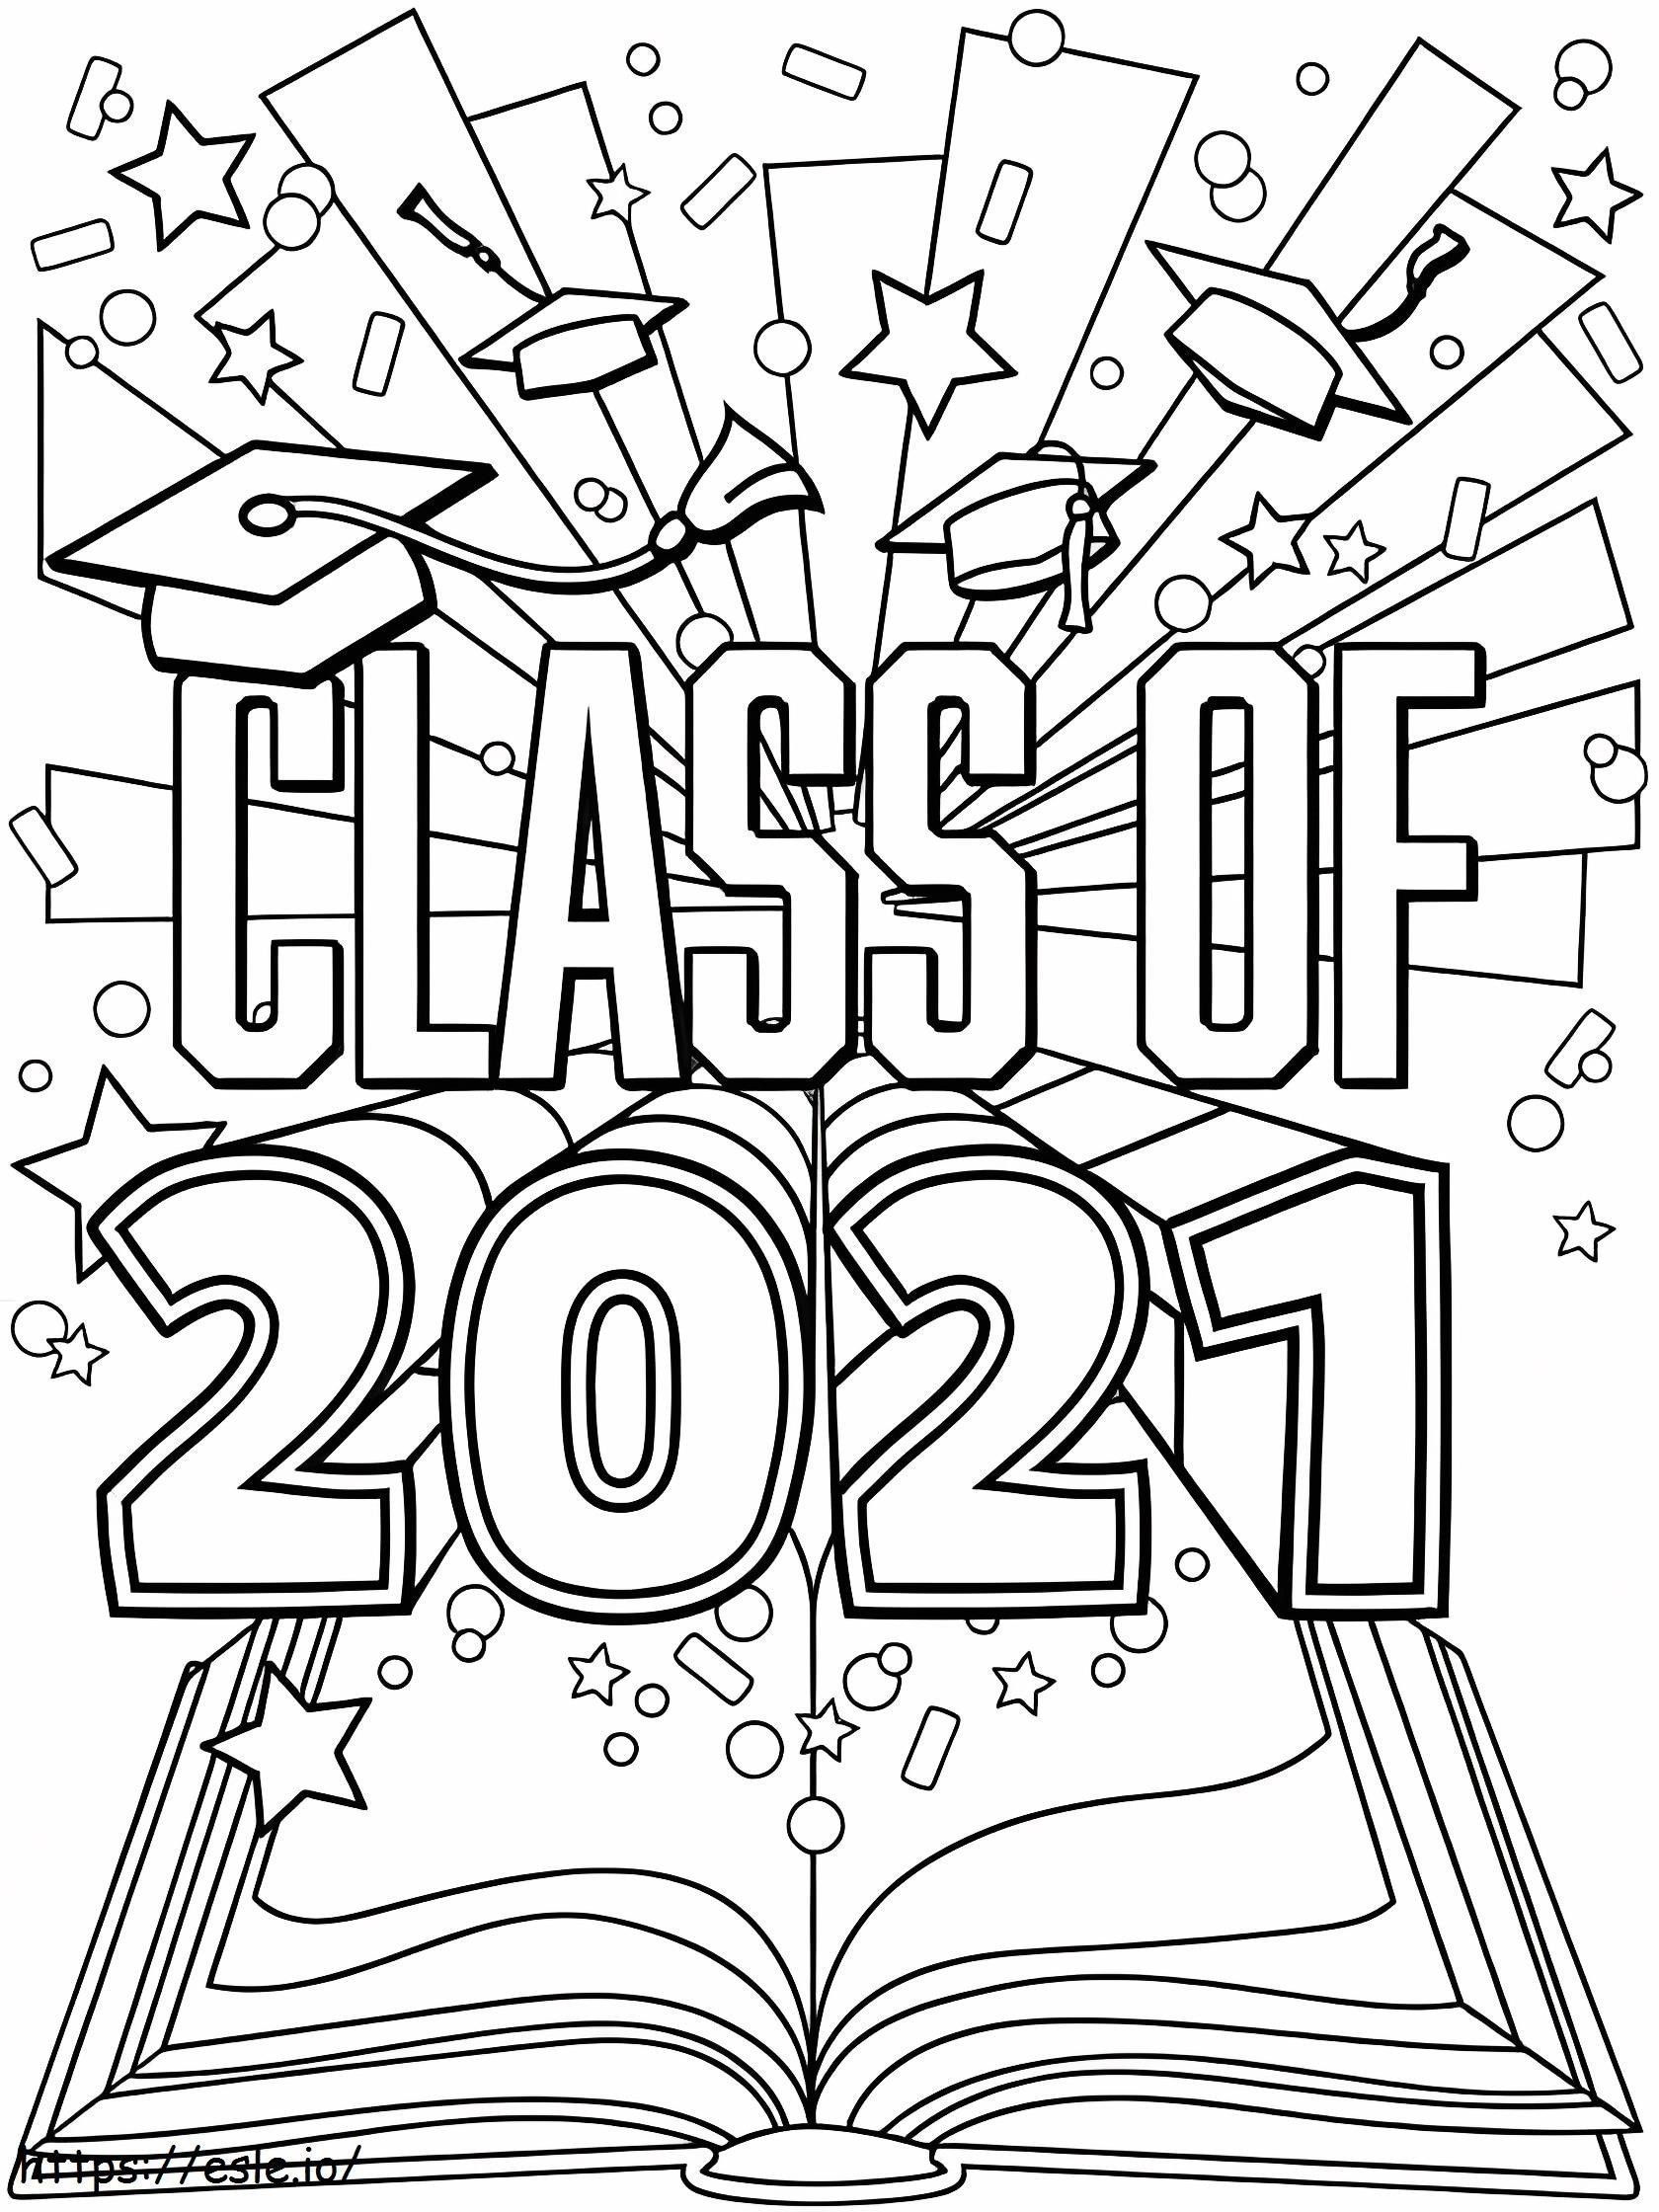 Klasse van 2021 afstuderen kleurplaat kleurplaat